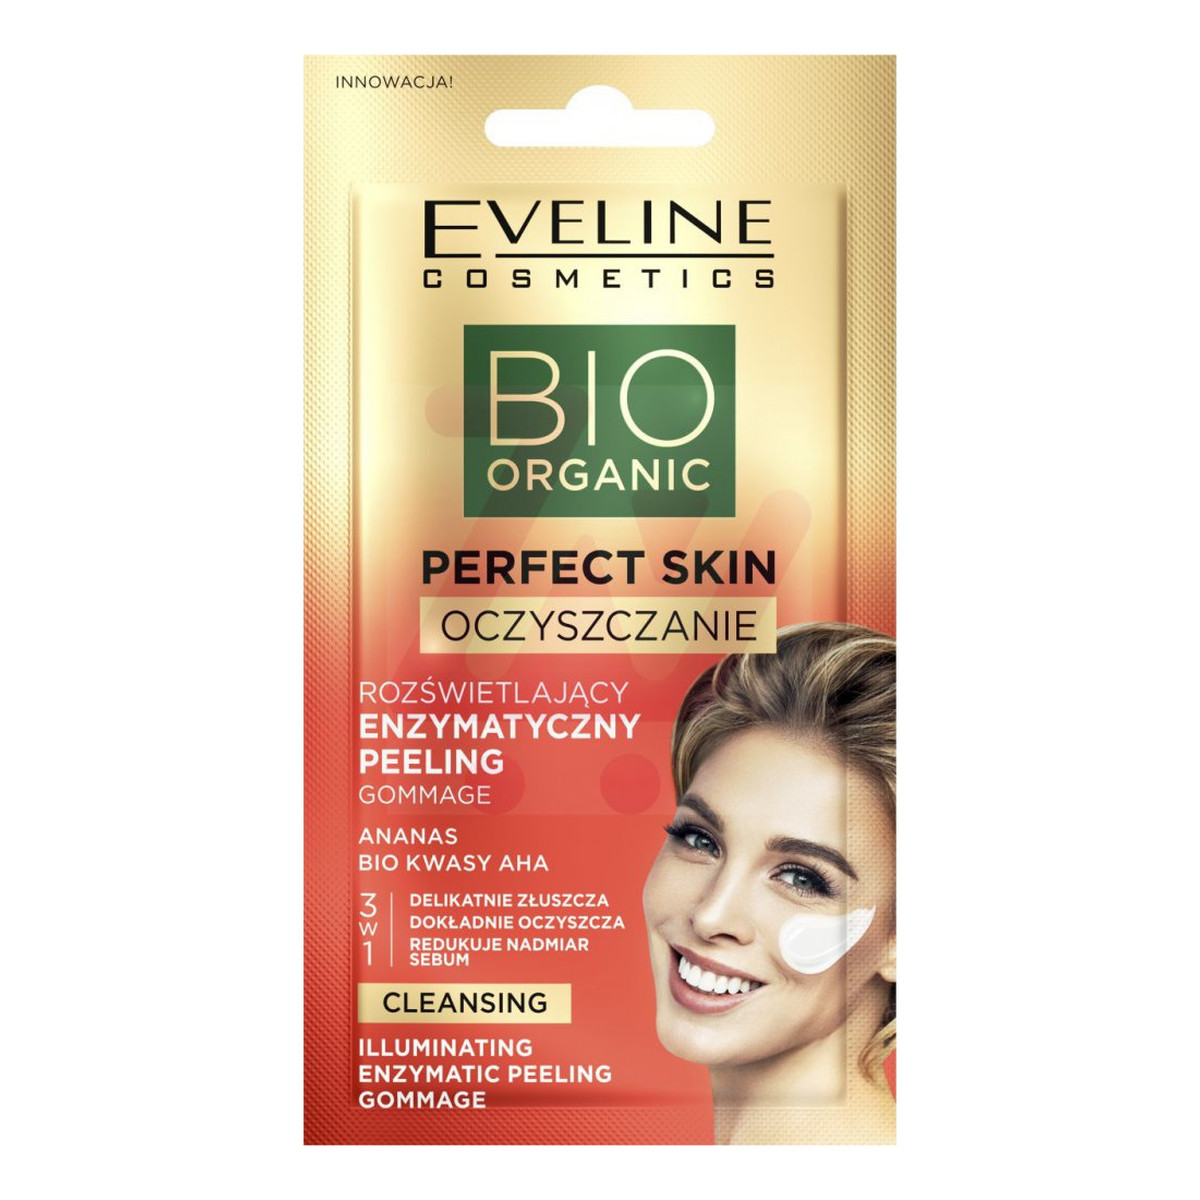 Eveline Bio Organic Perfect Skin Rozświetlający Enzymatyczny Peeling z bio kwasami AHA i ananasem 8ml